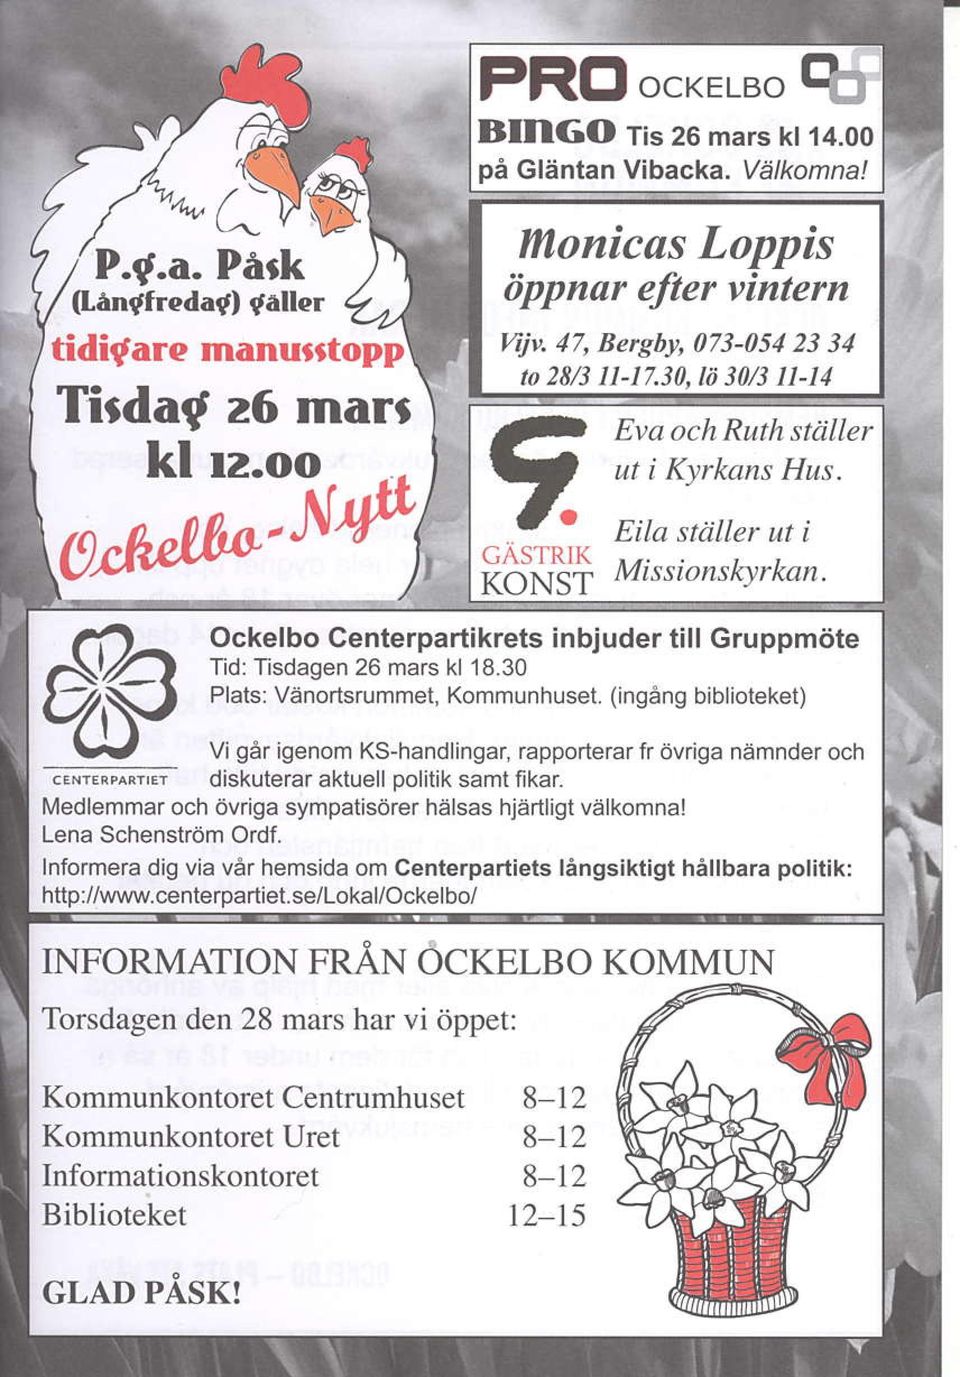 Ockelbo Centerpartikrets inbjuder till Gruppmtite Tid: Tisdagen 26 mars kl 18.30 Plats: Venortsrummei, Kommunhuset.